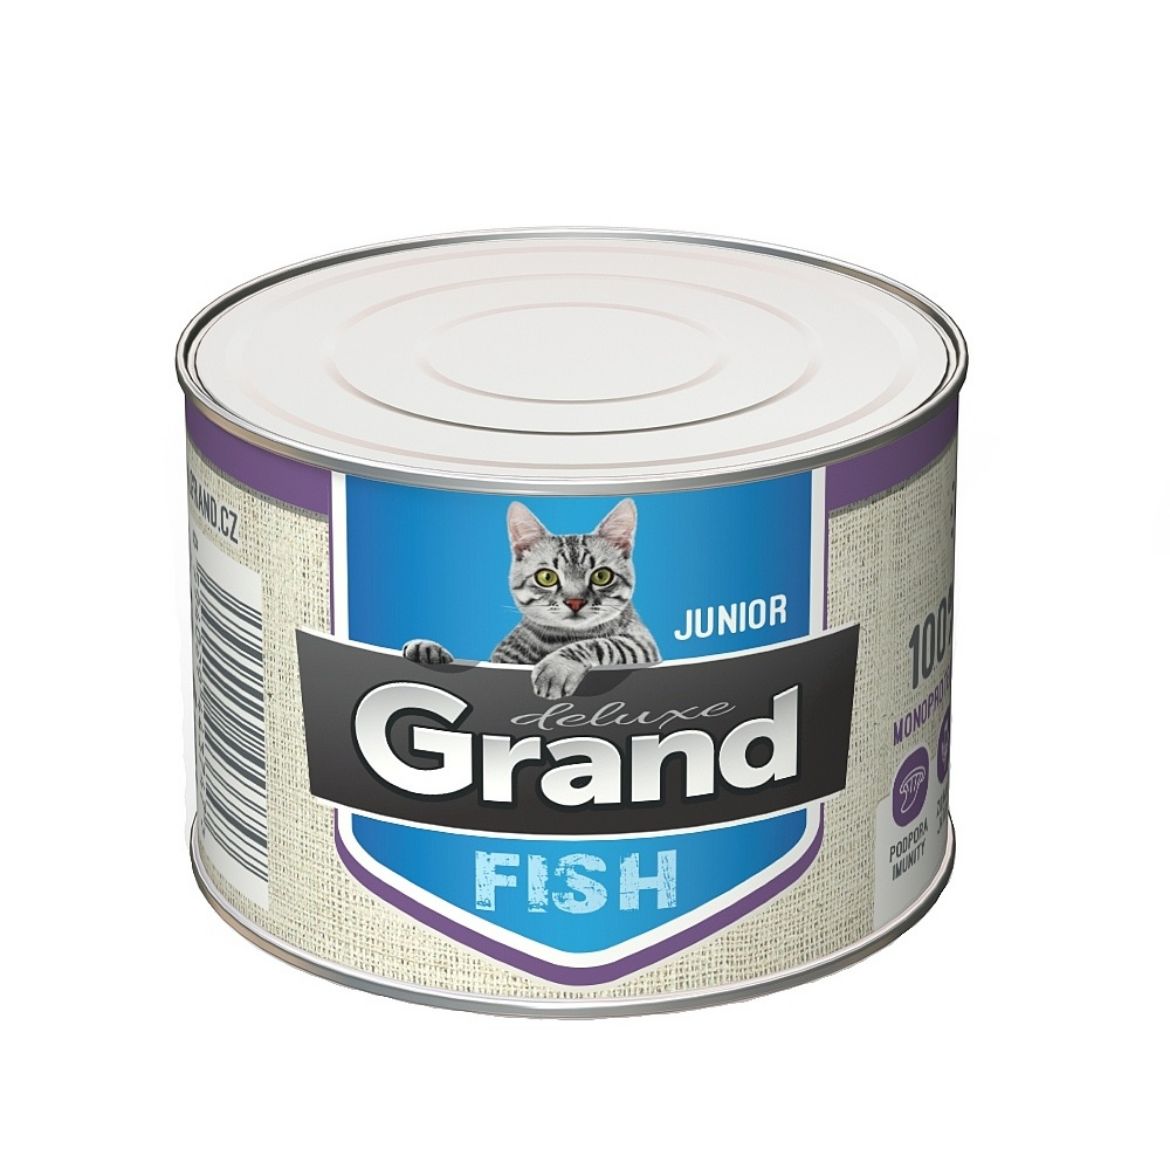 Obrázek z Grand deluxe Cat Junior 100 % rybí, konzerva 180 g 